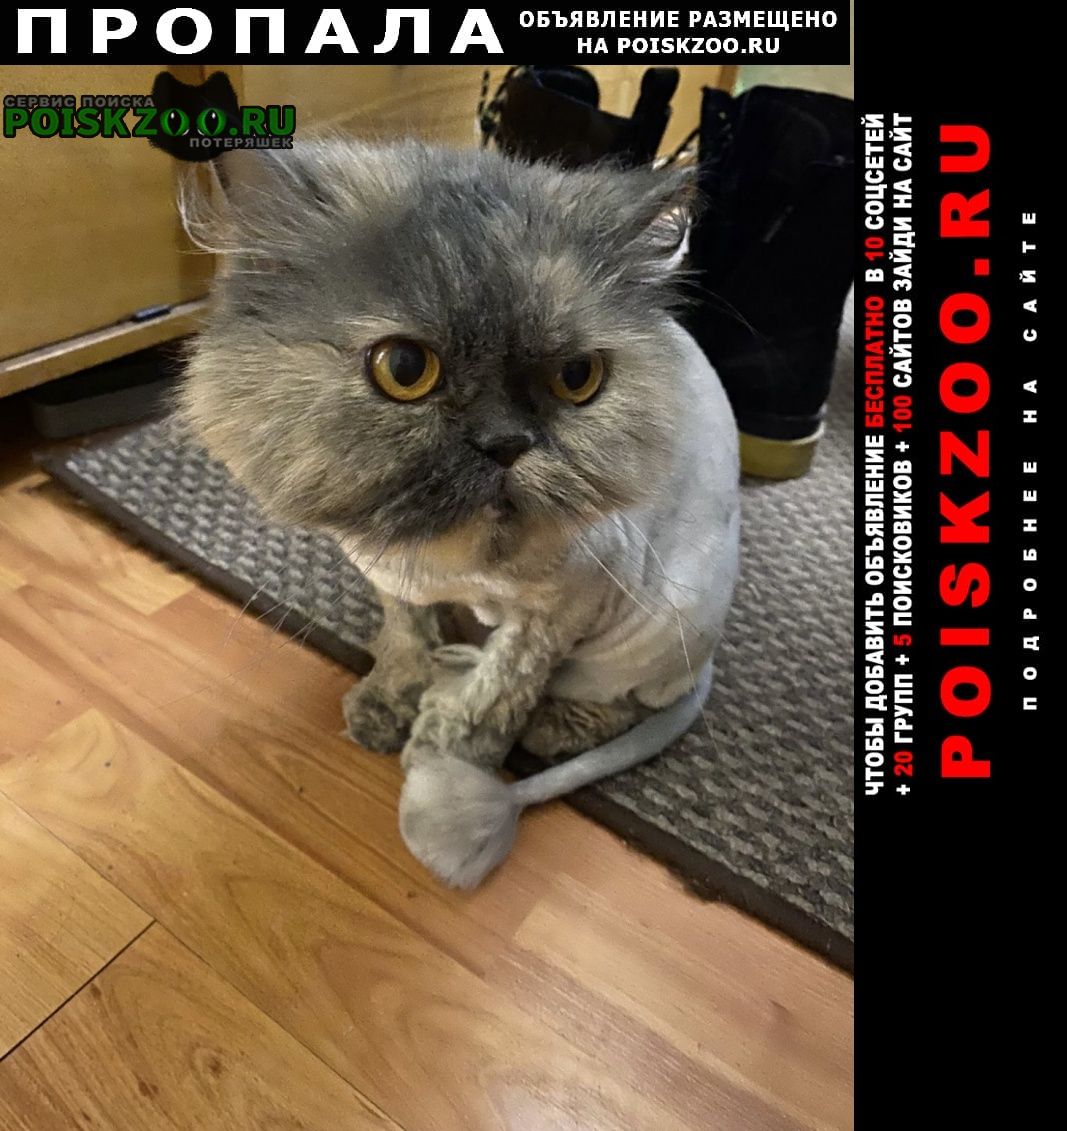 Санкт-Петербург Пропала кошка персидская, серая, стриженная